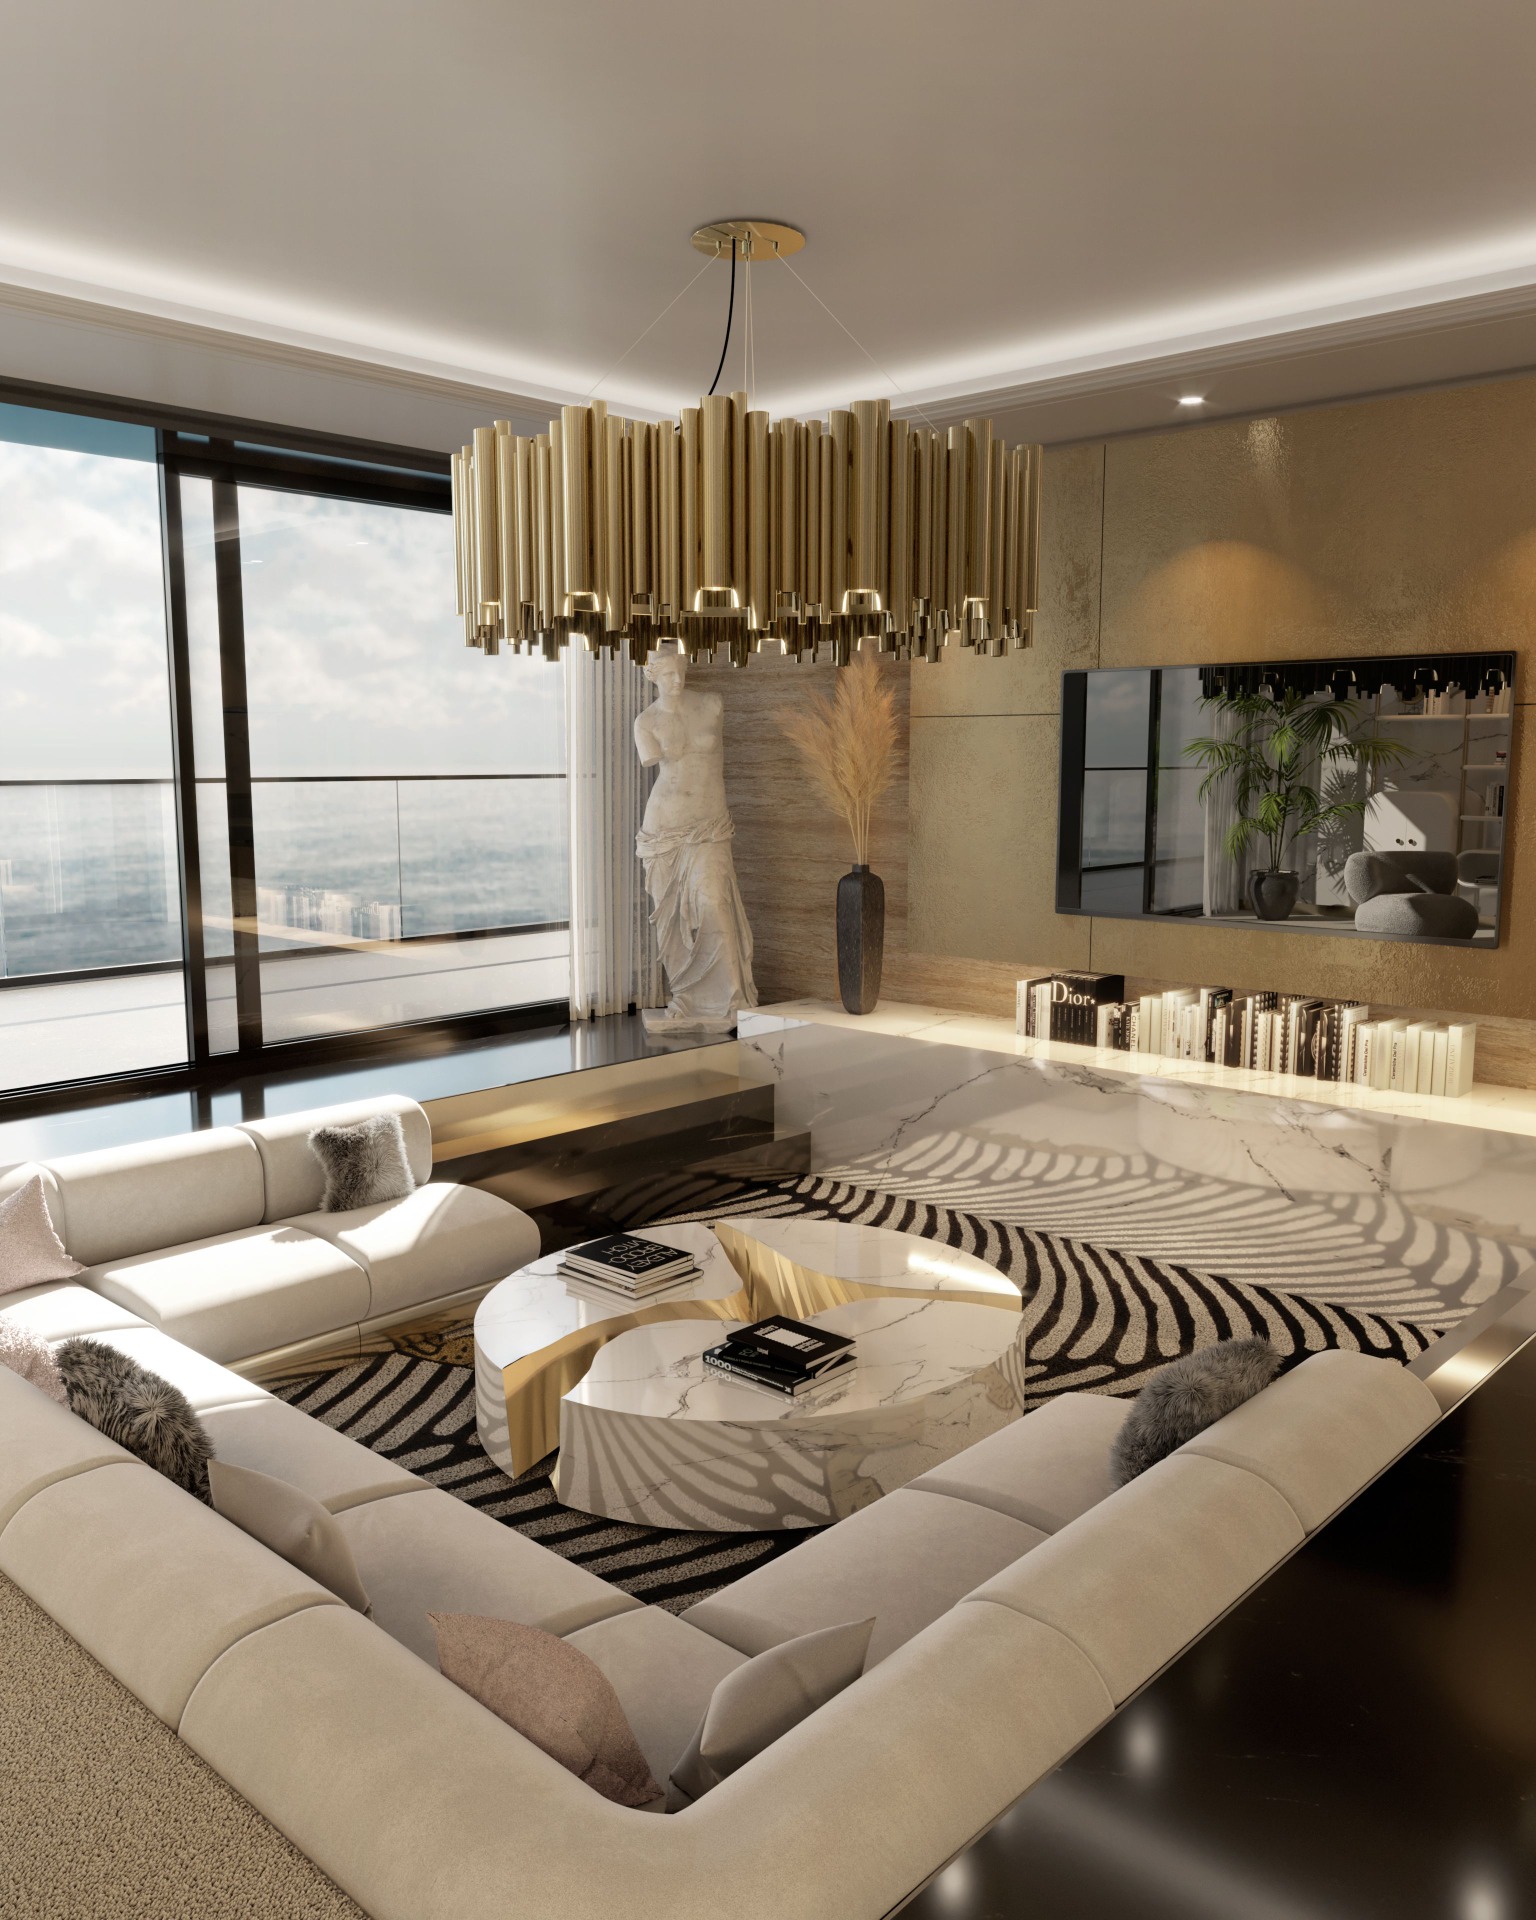 fierce living room design with golden details